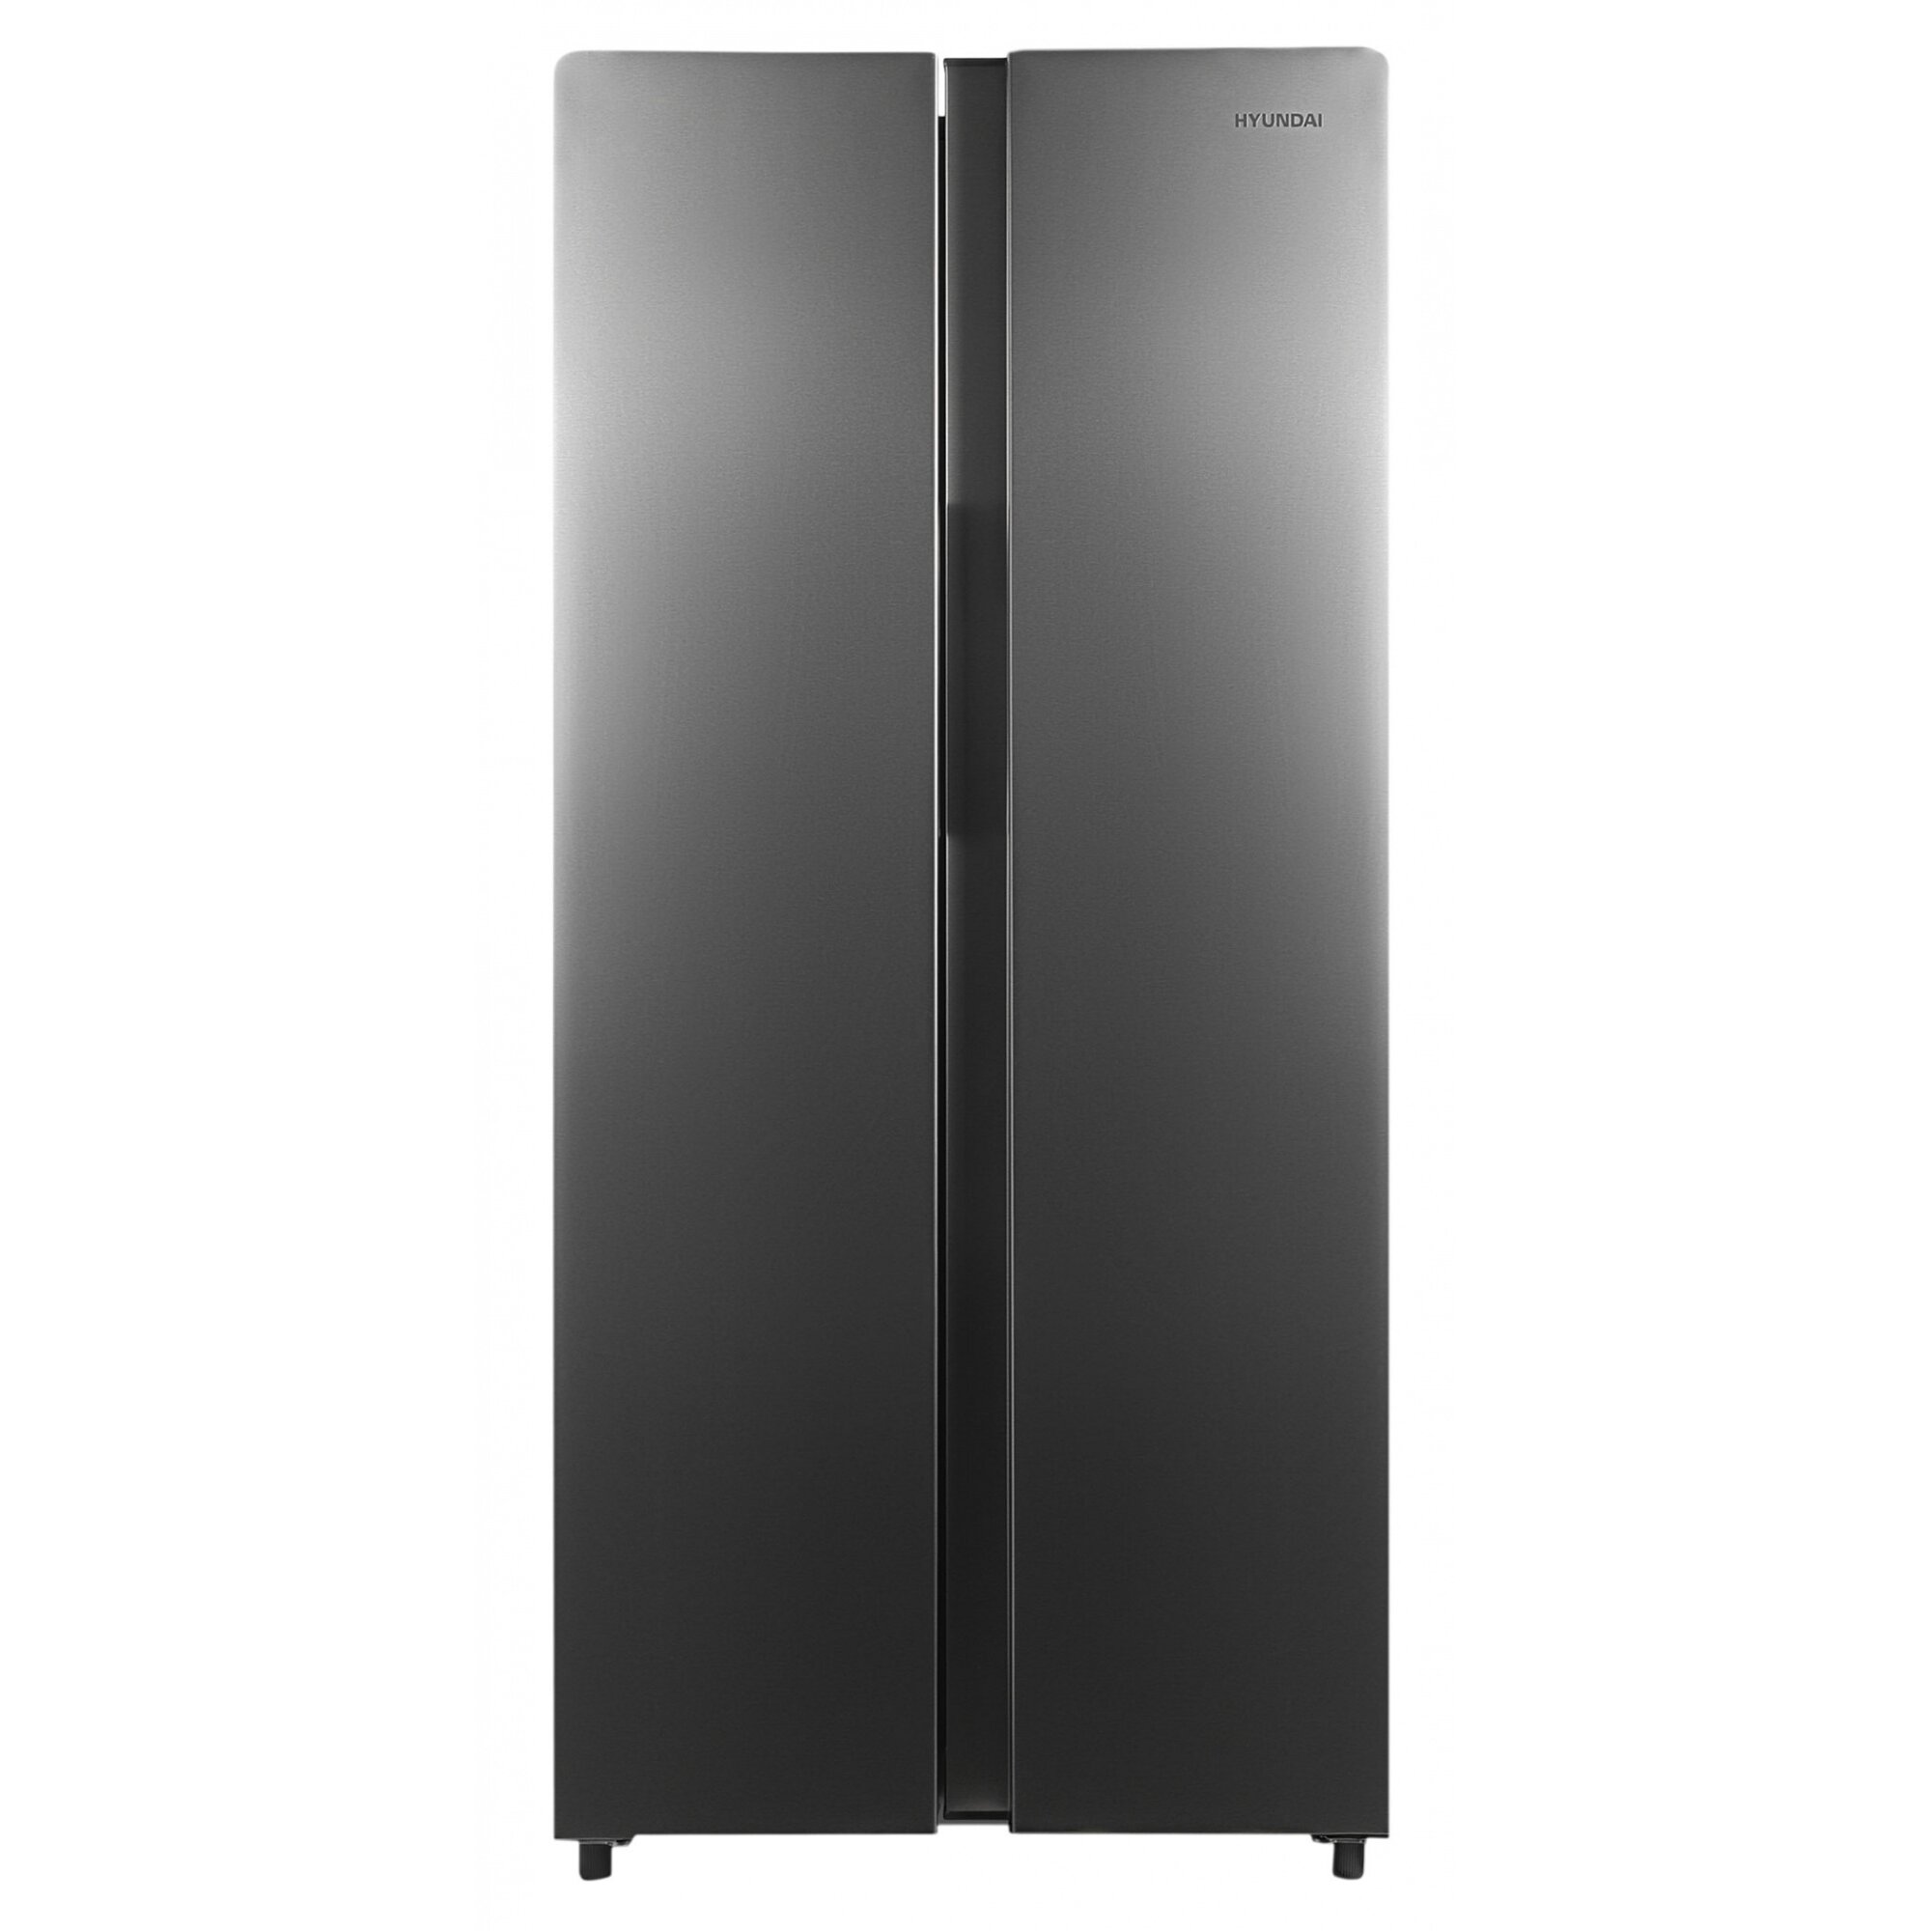 Холодильник Hyundai cc4023f. Холодильник Hyundai cs6503fv, черный. Холодильник Hyundai cc3593fix. Холодильник Hyundai cc3095fix нержавеющая сталь.